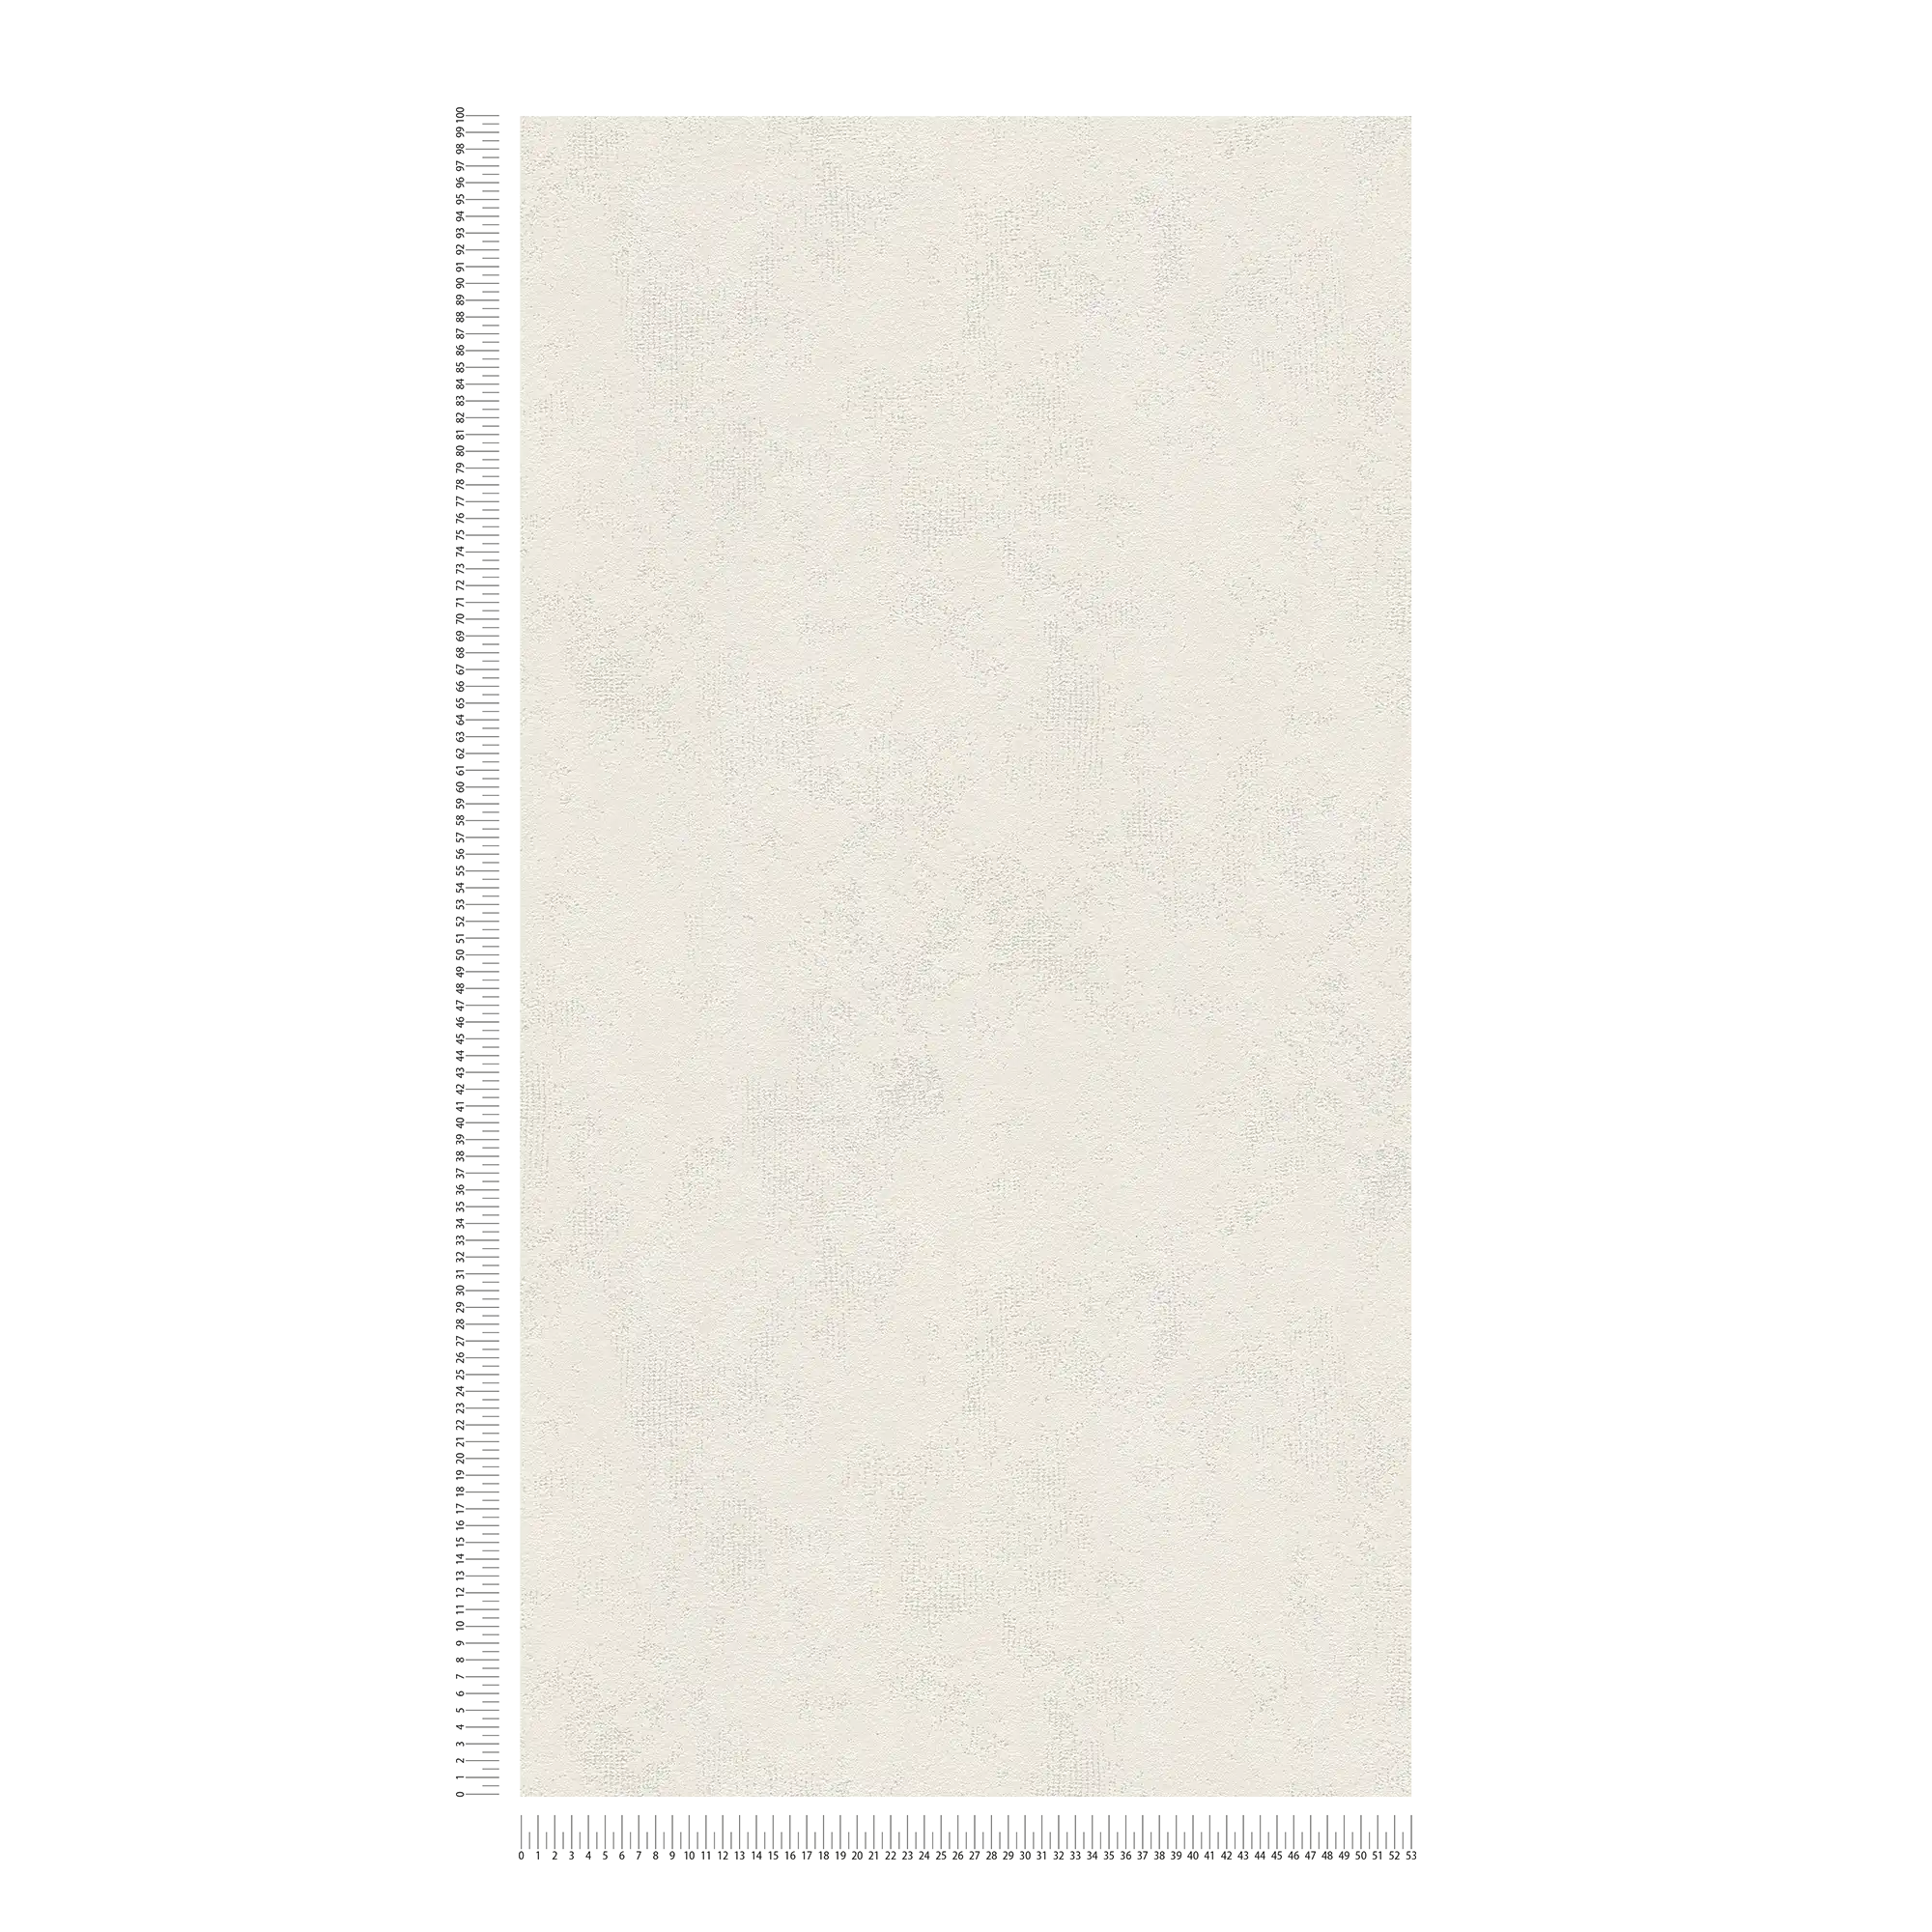             Papel pintado de aspecto usado no tejido con óptica de yeso con sombreado de color - crema
        